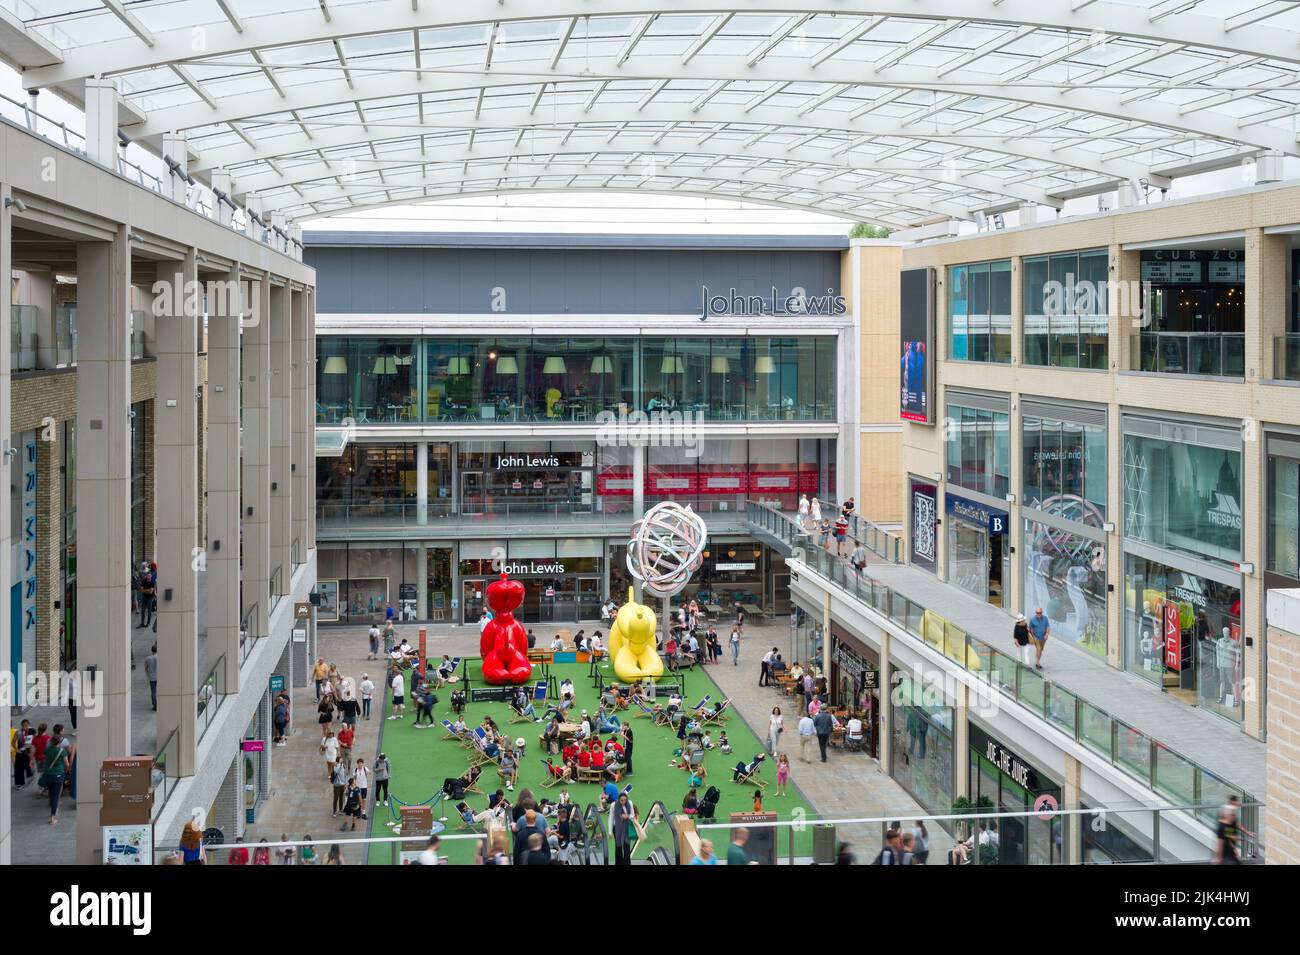 Innenansicht des Westgate Shopping Centers mit Blick auf John Lewis, Oxford, Großbritannien Stockfoto